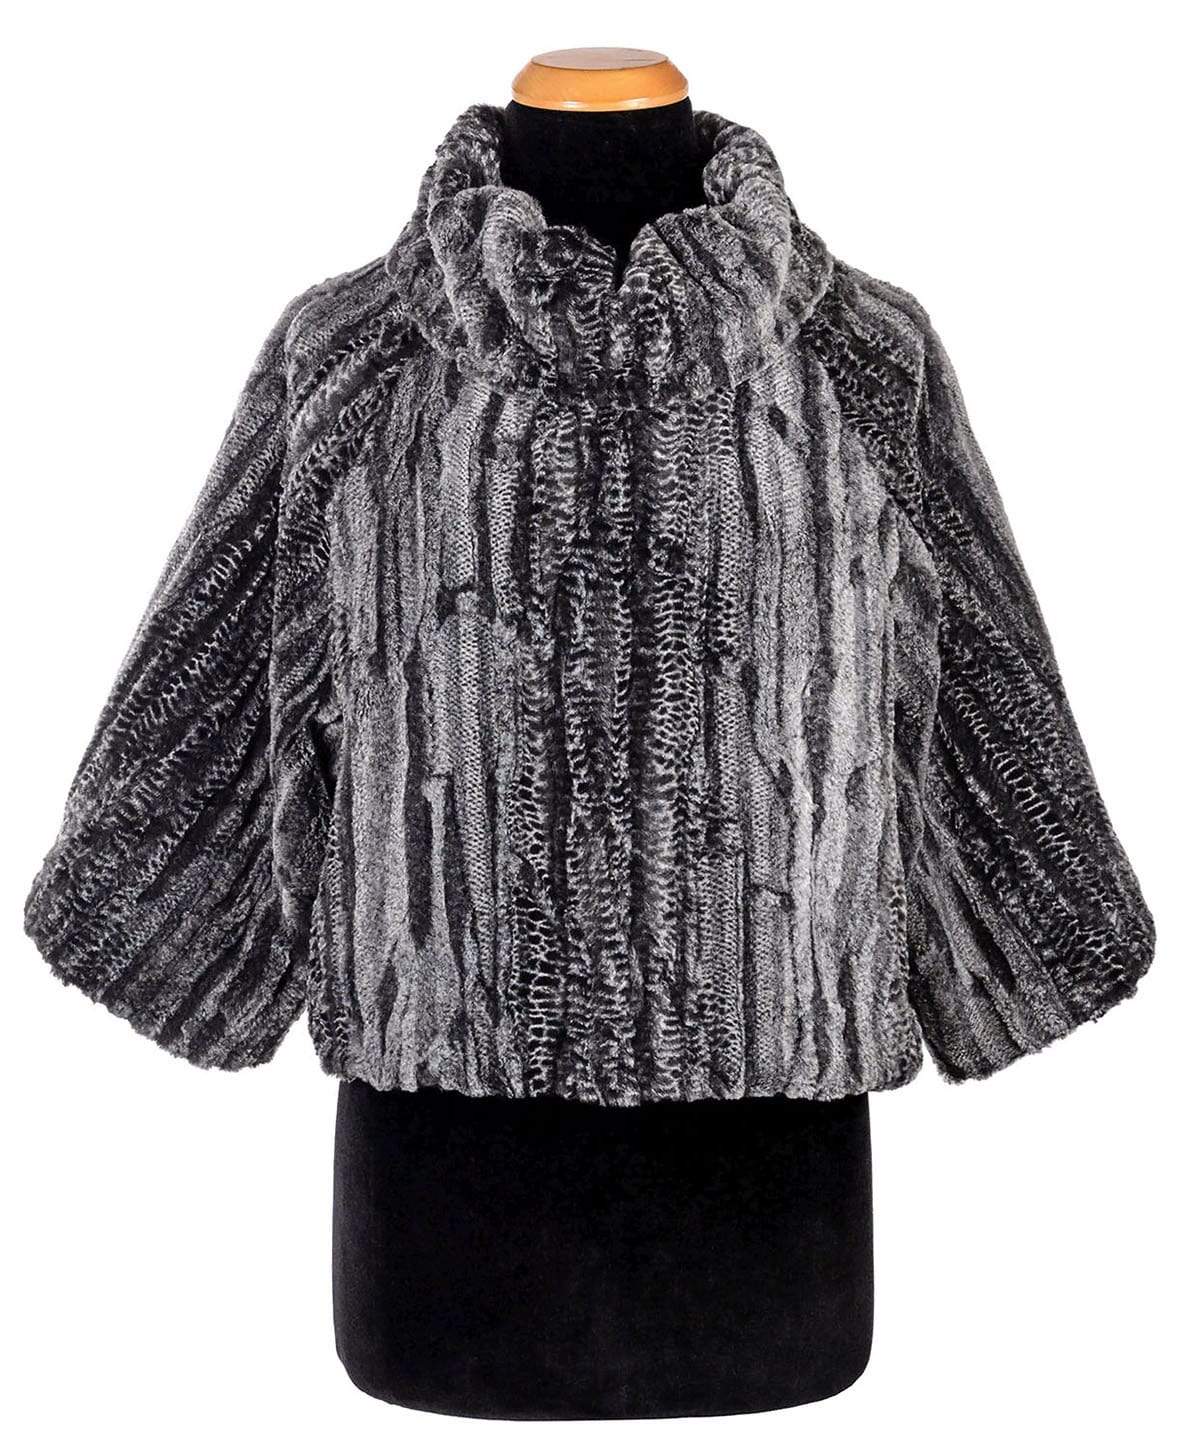 Sweater Top - Luxury Faux Fur in Rattle N Shake